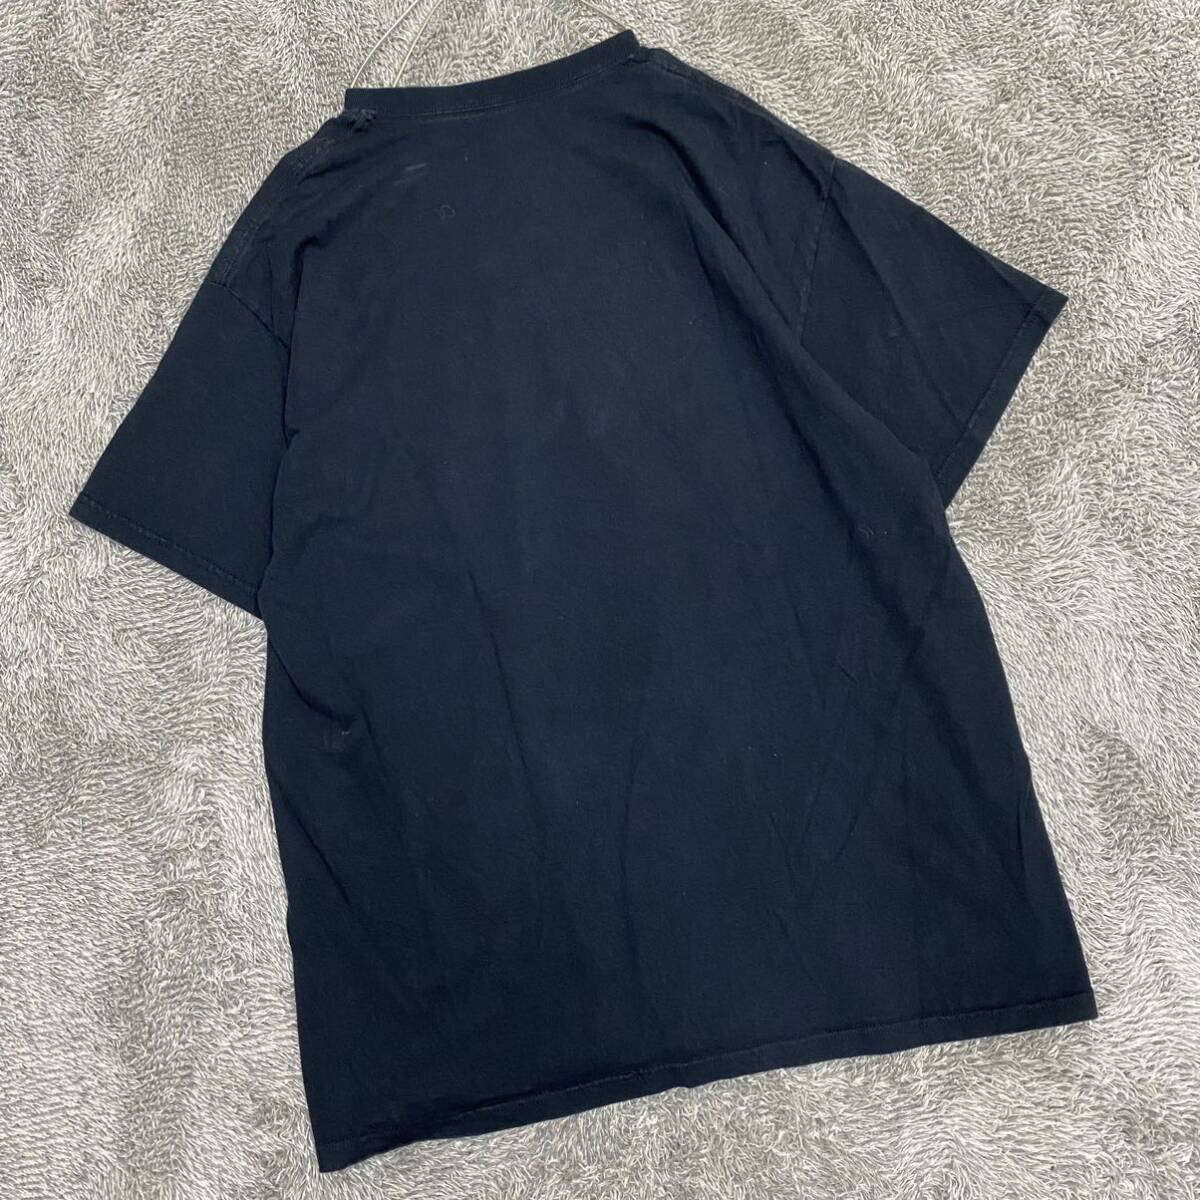 PORT&COMPANY ポートアンドカンパニー Tシャツ 半袖カットソー サイズXL ブラック 黒 メンズ トップス 最落なし （D19）_画像2